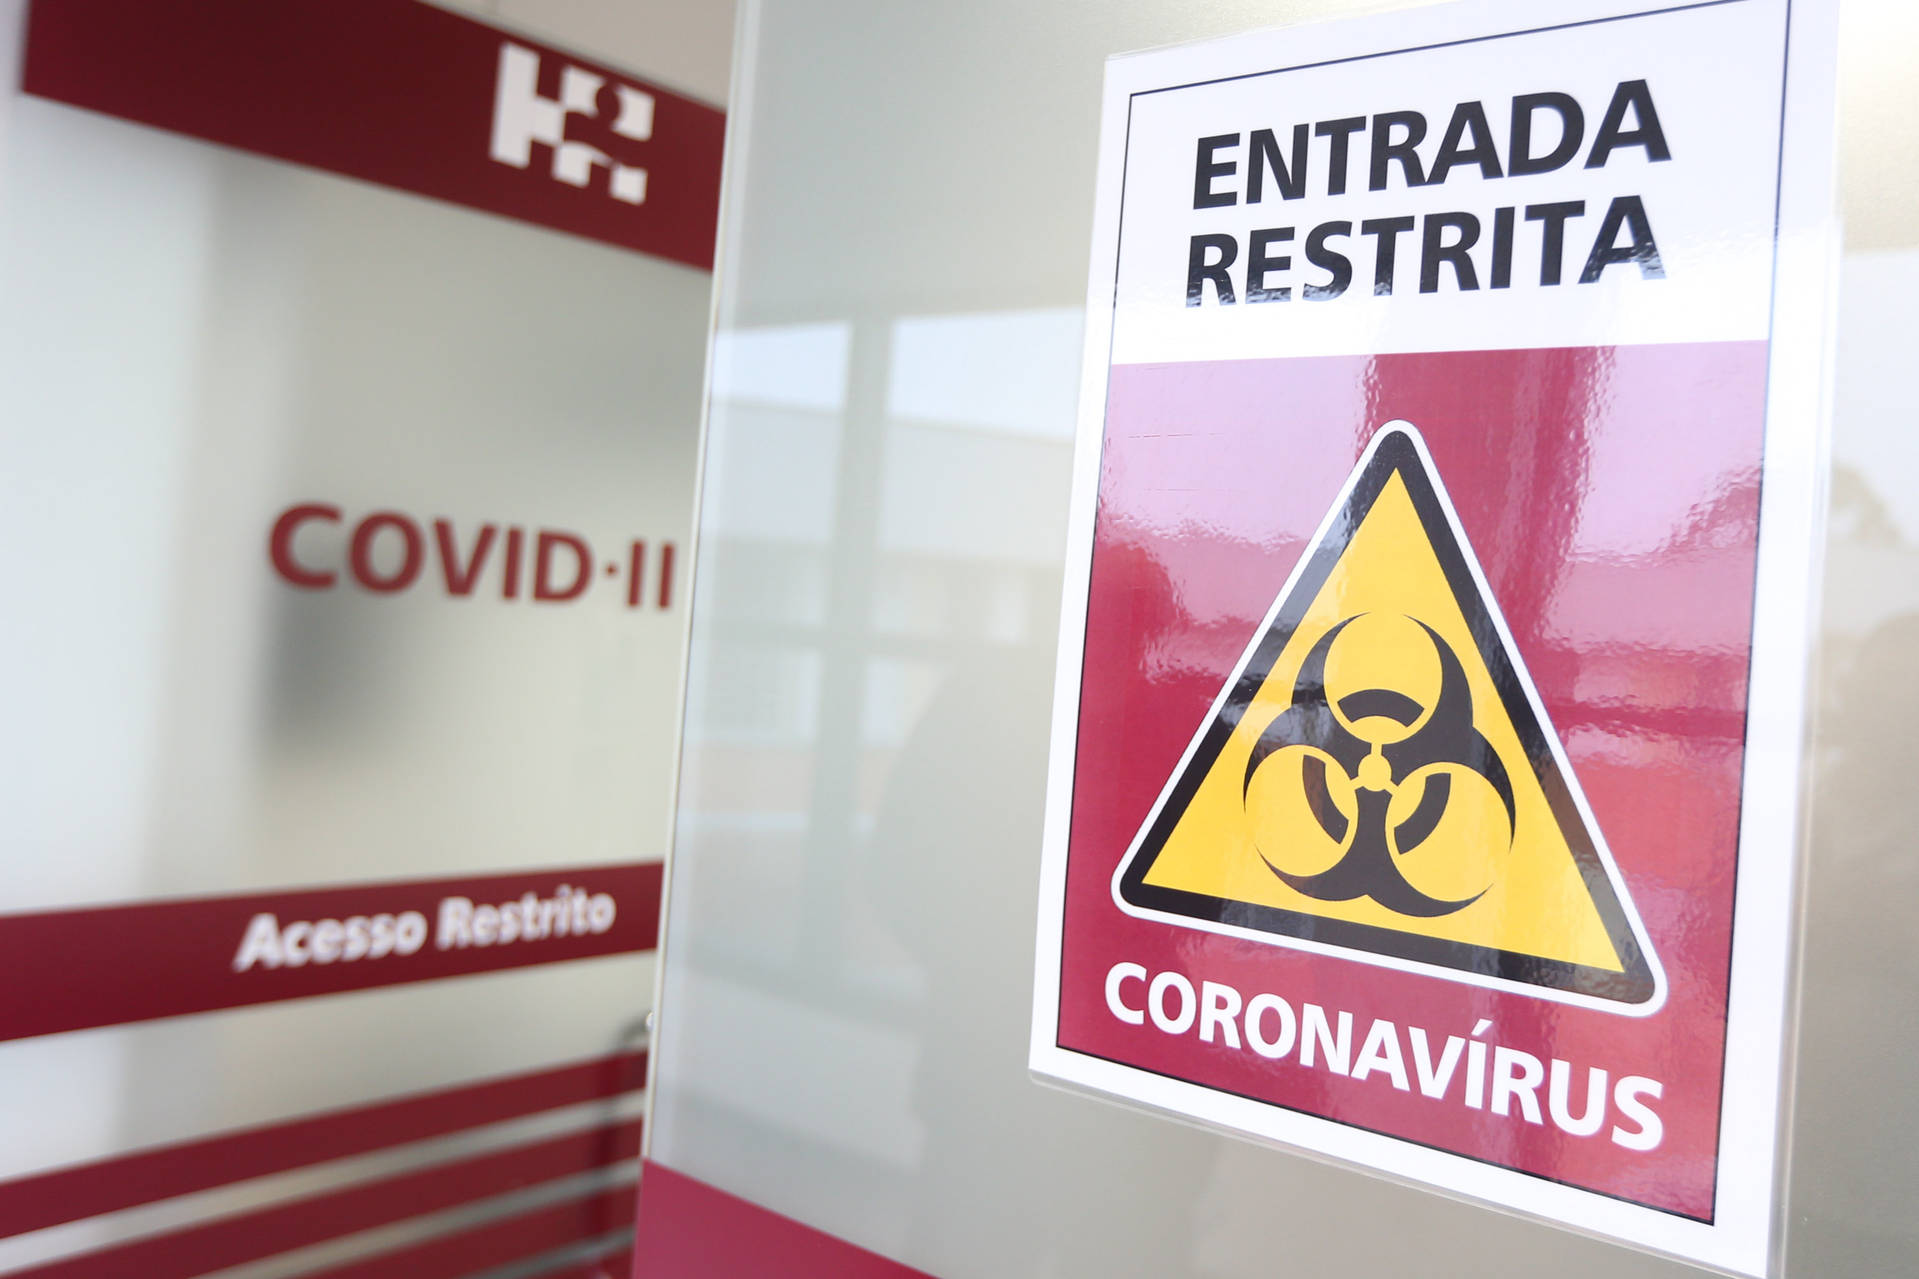 Paraná registra 4.729 novos casos e 180 óbitos por Covid-19. Estado já aplicou 745.046 doses de vacina